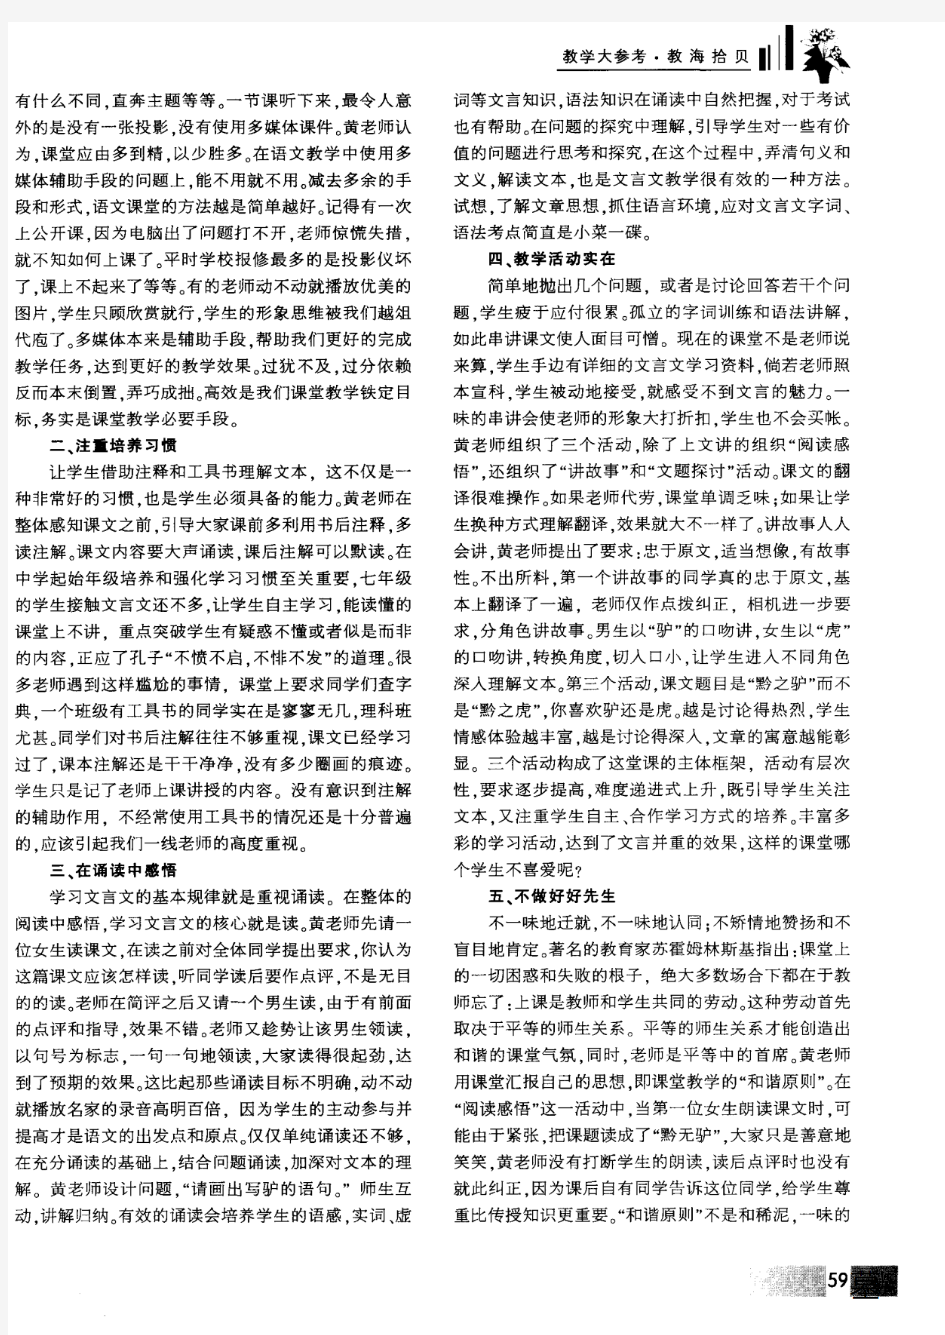 用语文的方法教语文——以黄厚江老师的示范课《黔之驴》为例